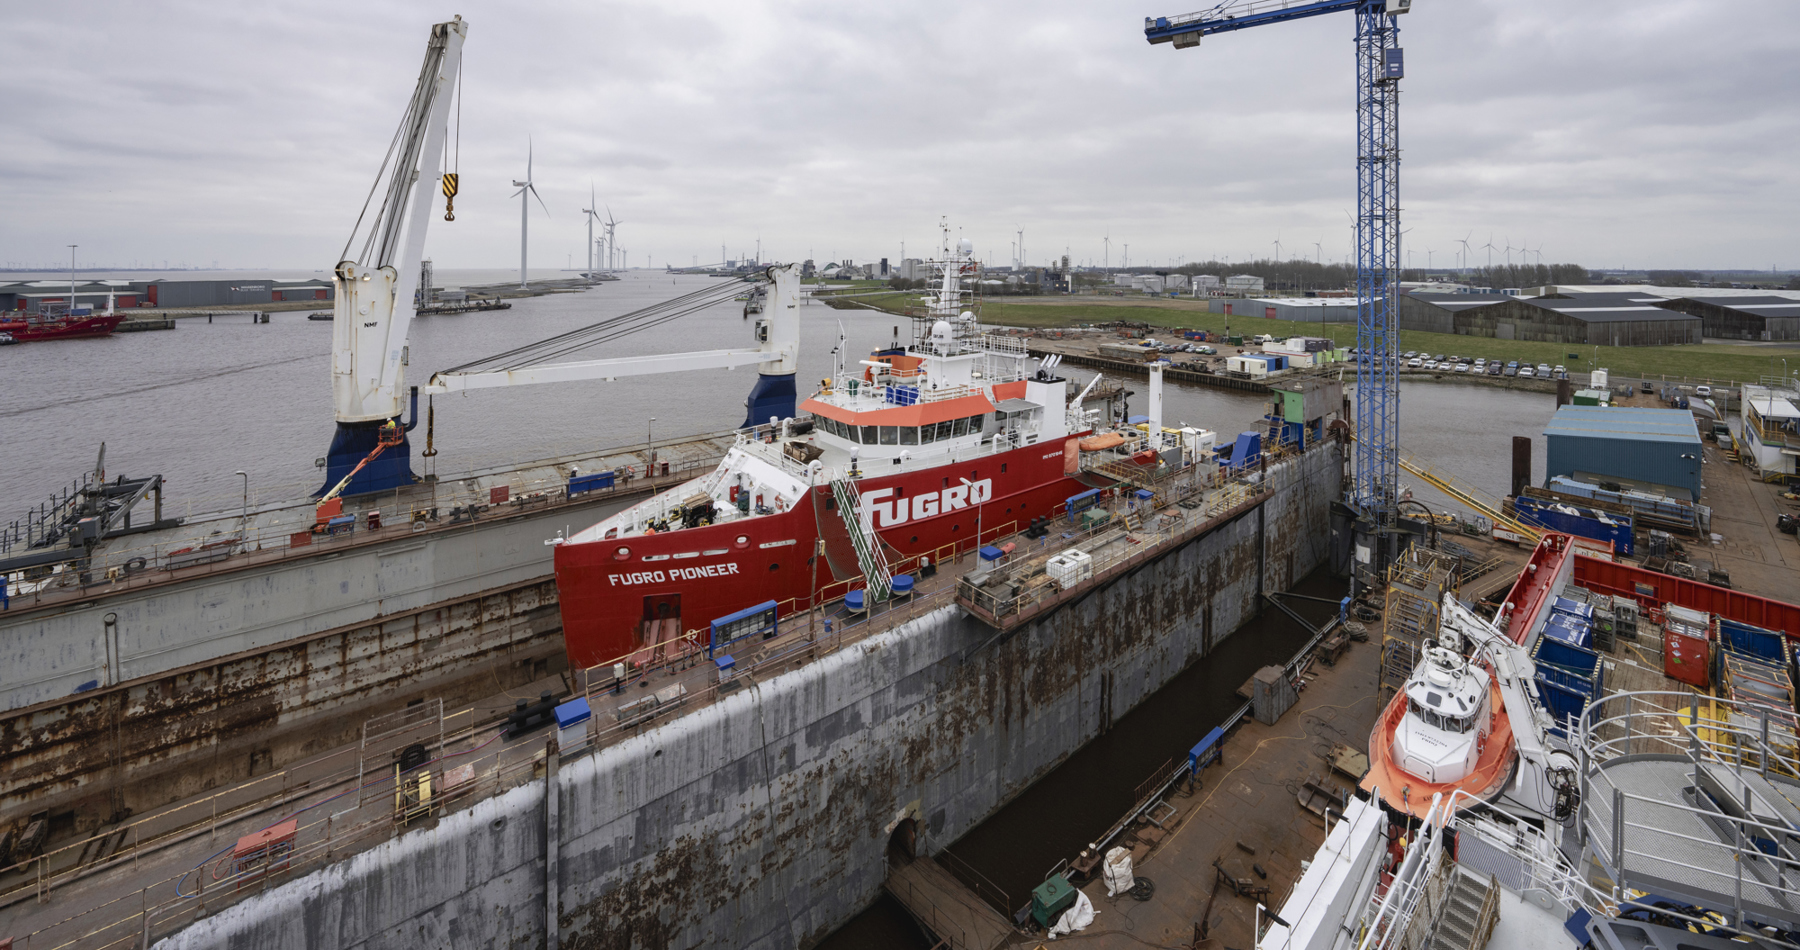 Shipyard Royal Niestern Sander awarded steel works for methanol conversion ‘Fugro Pioneer’